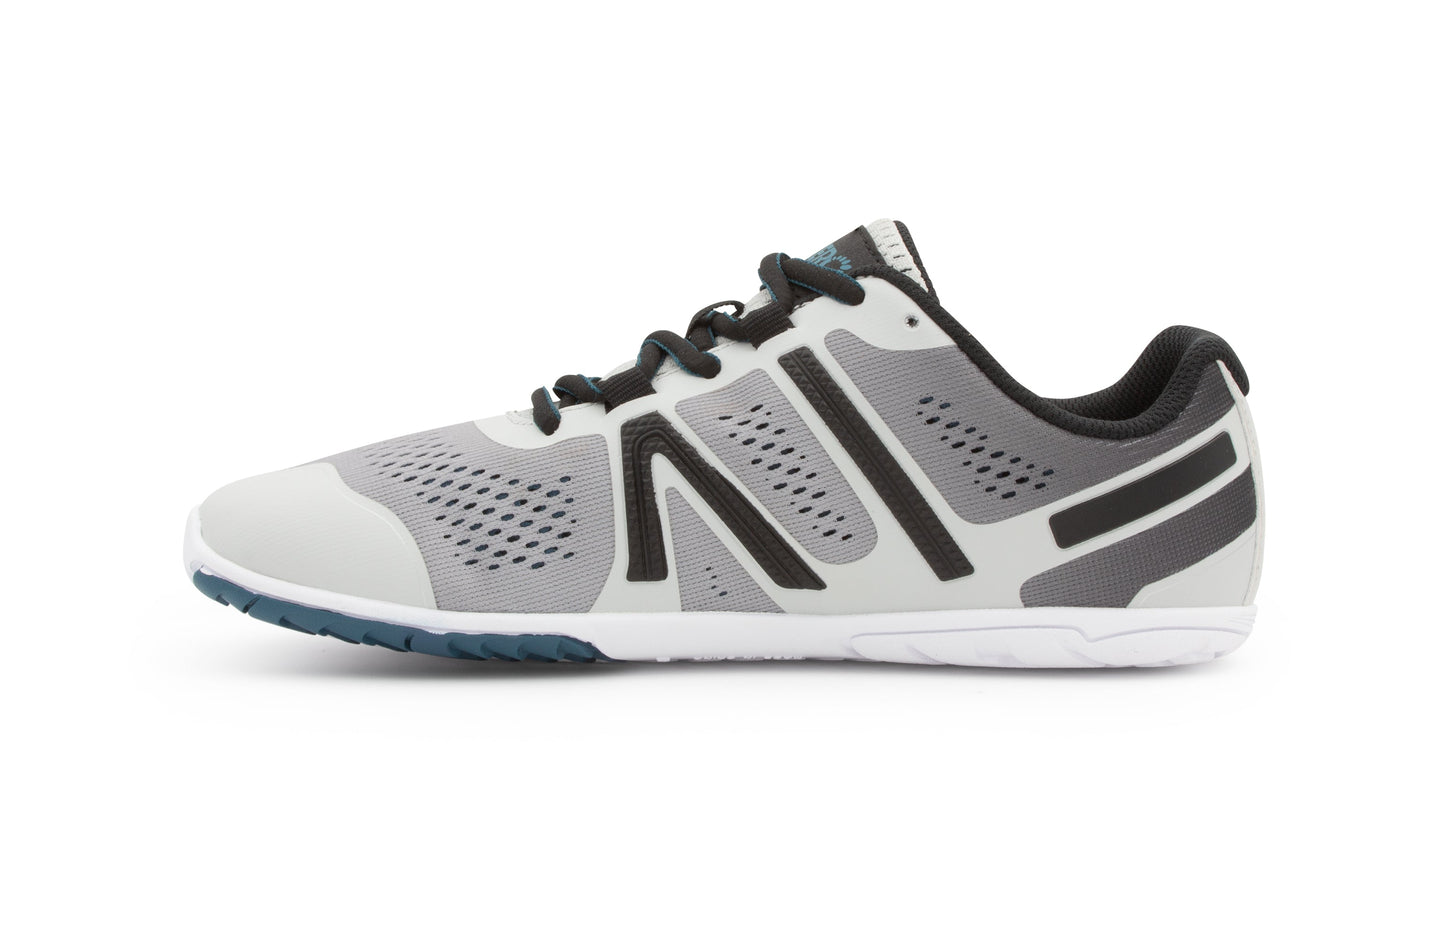 Xero Shoes HFS Womens barfods træningssko/løbesko til kvinder i farven aurora gray, inderside